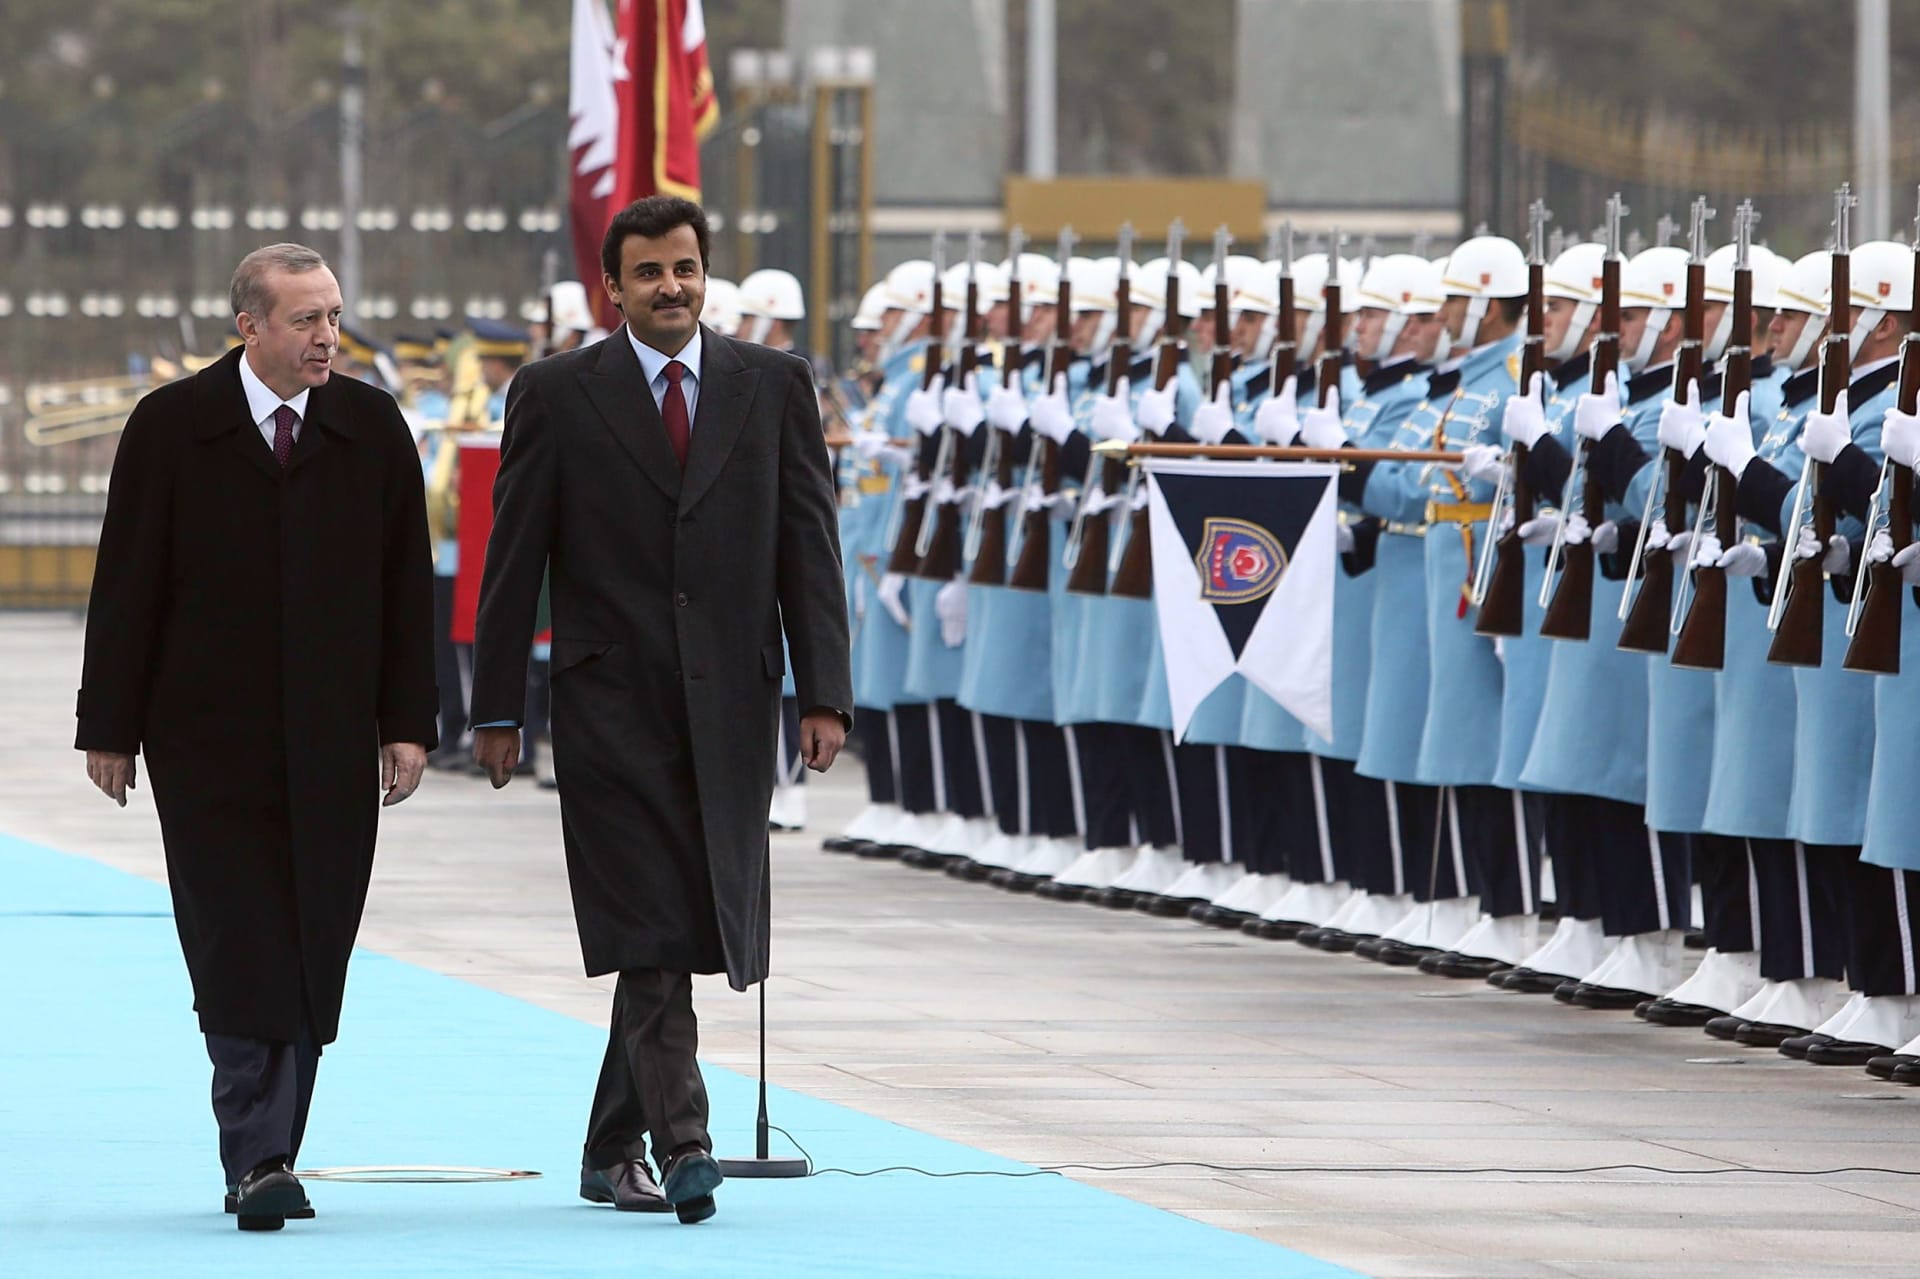 أنقرة: القاعدة التركية في قطر تهدف لتعزيز دفاع الخليج بأكمله.. وزيارة أردوغان لقطر تحكمها "التطورات السياسية"